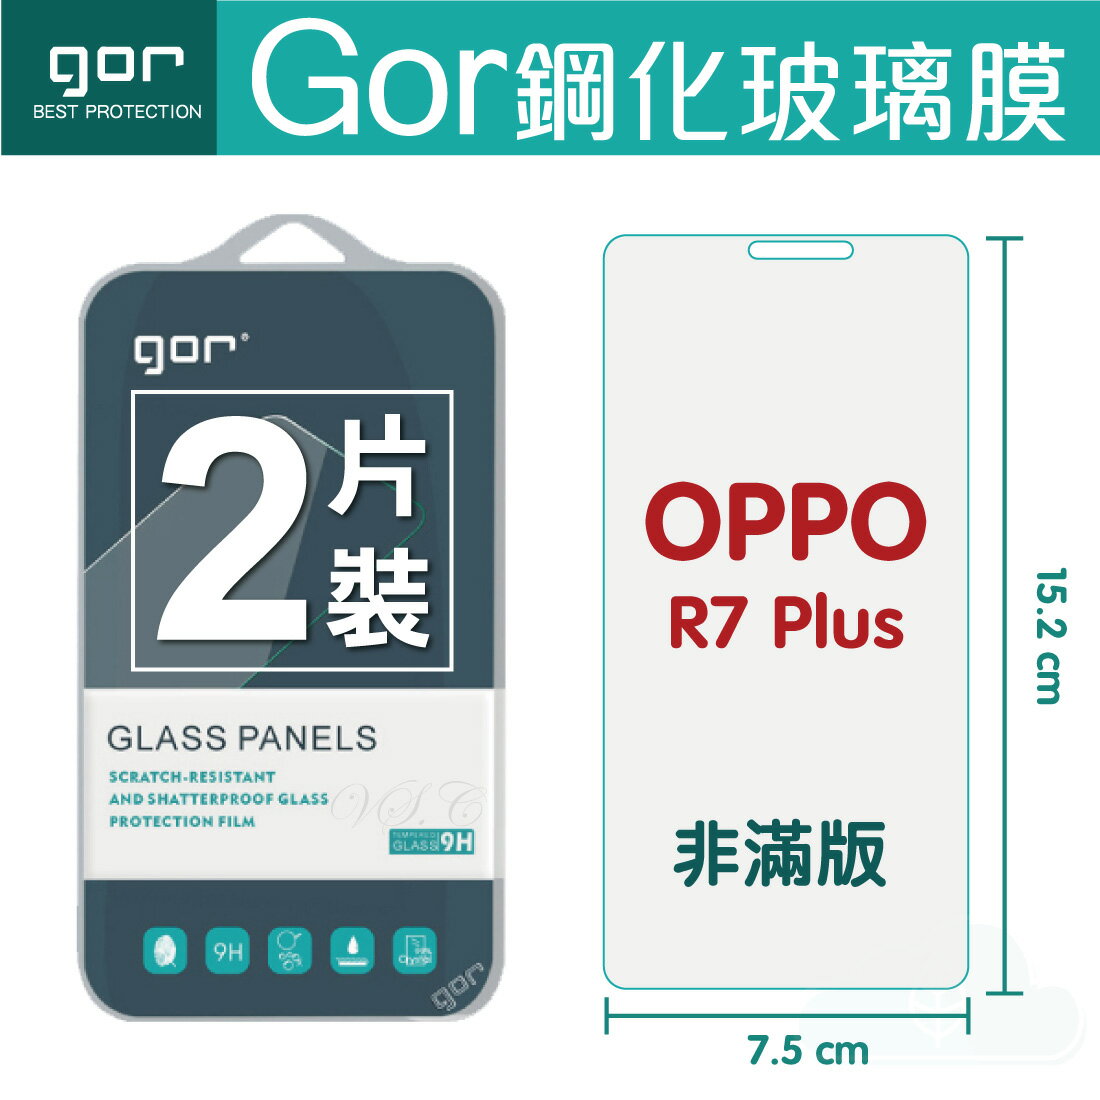 【OPPO】GOR 9H OPPO R7 PLUS R7+ 鋼化 玻璃 保護貼 全透明非滿版 兩片裝【APP下單最高22%回饋】